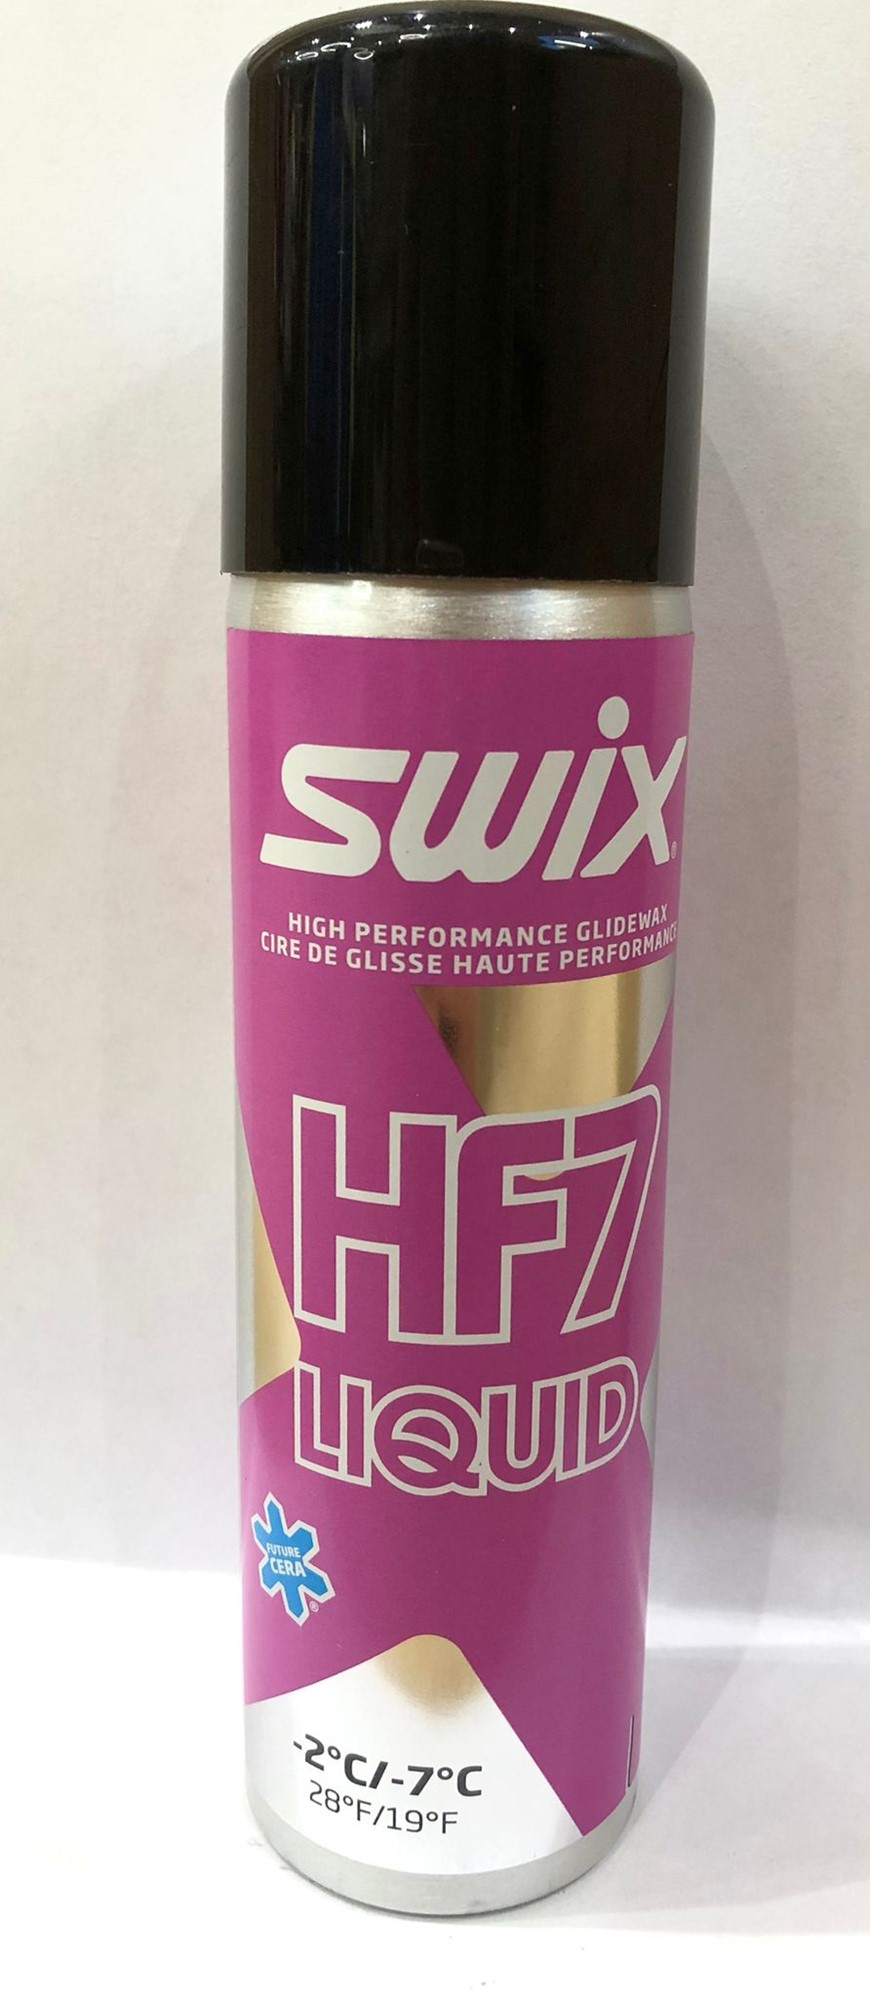 SWIX HF7 